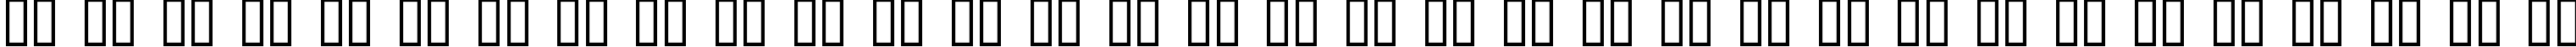 Пример написания русского алфавита шрифтом Anyong